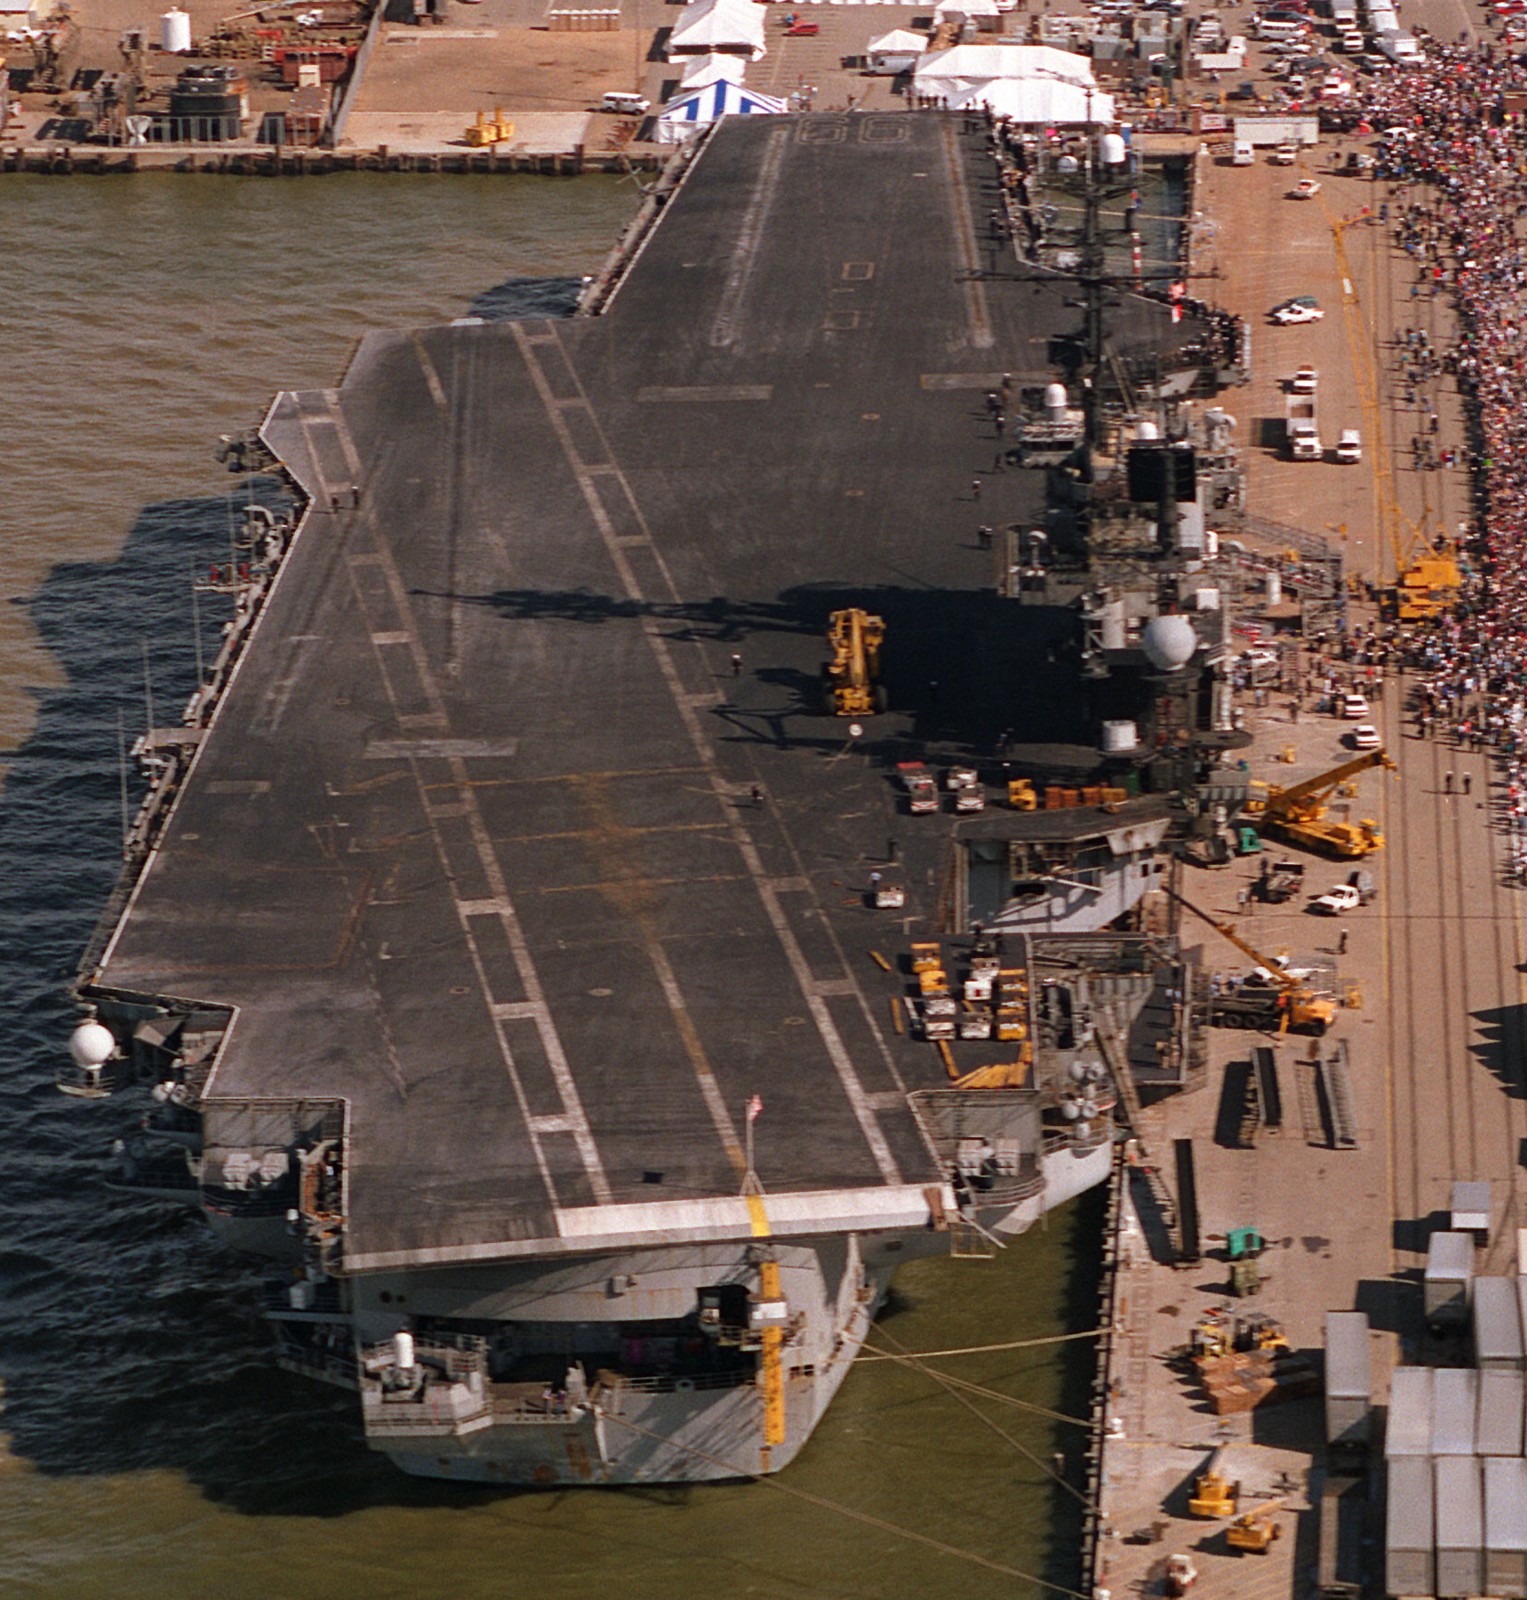 cv-66 uss america kitty hawk class aircraft carrier us navy returning norfolk 1996 113